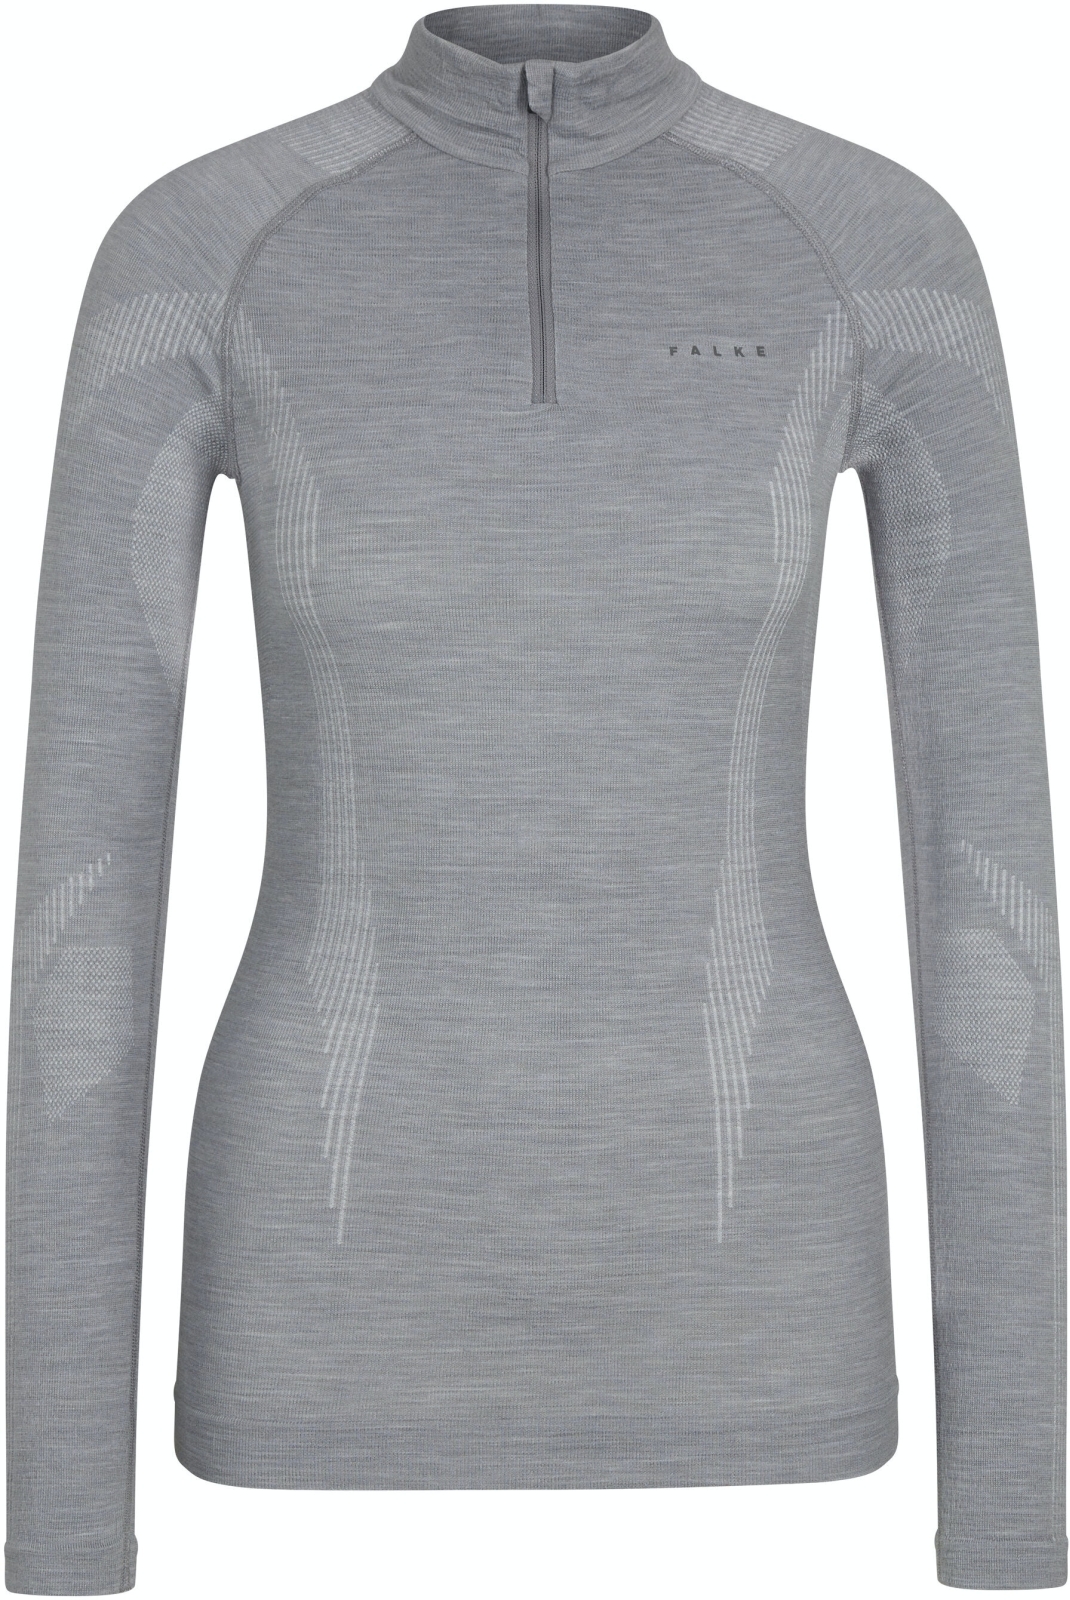 E-shop Falke Women long sleeve Shirt Wool-Tech - grey-heather L